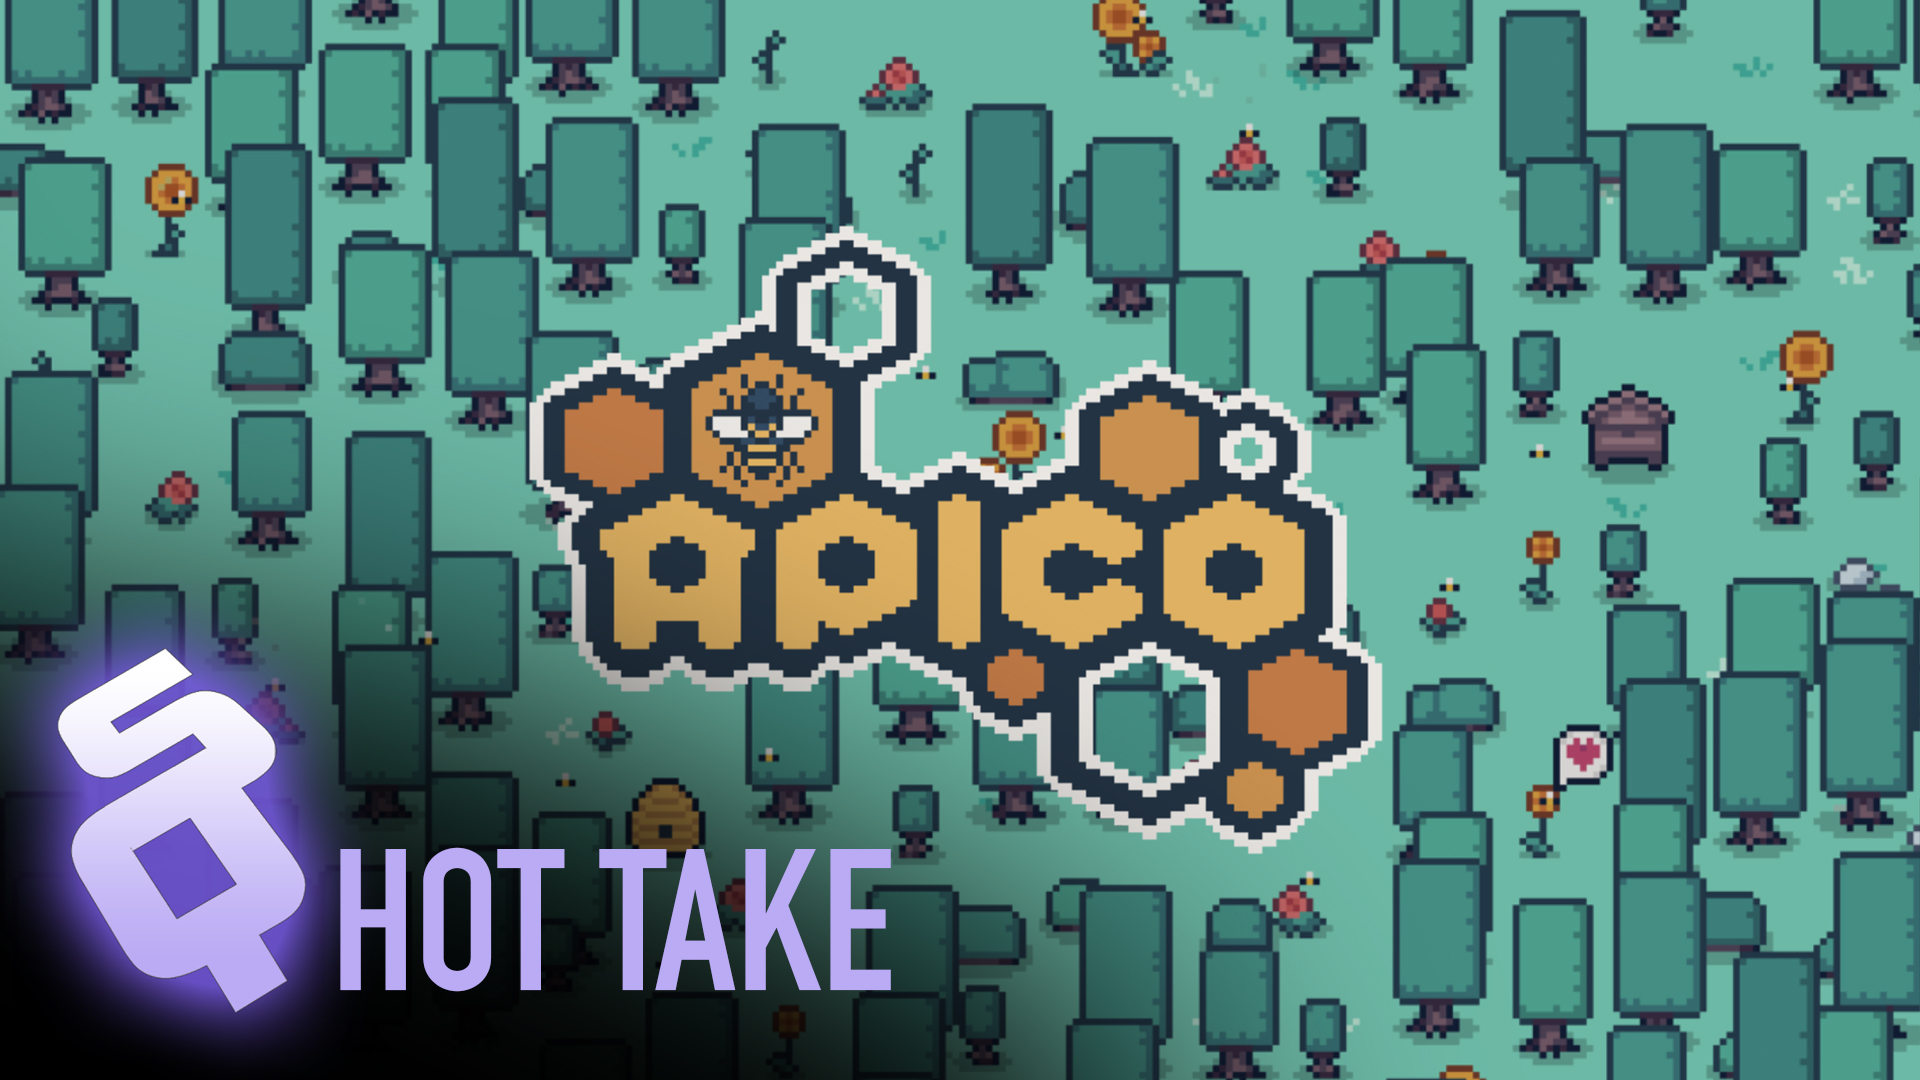 Hot Take: Apico is beekeeping fun